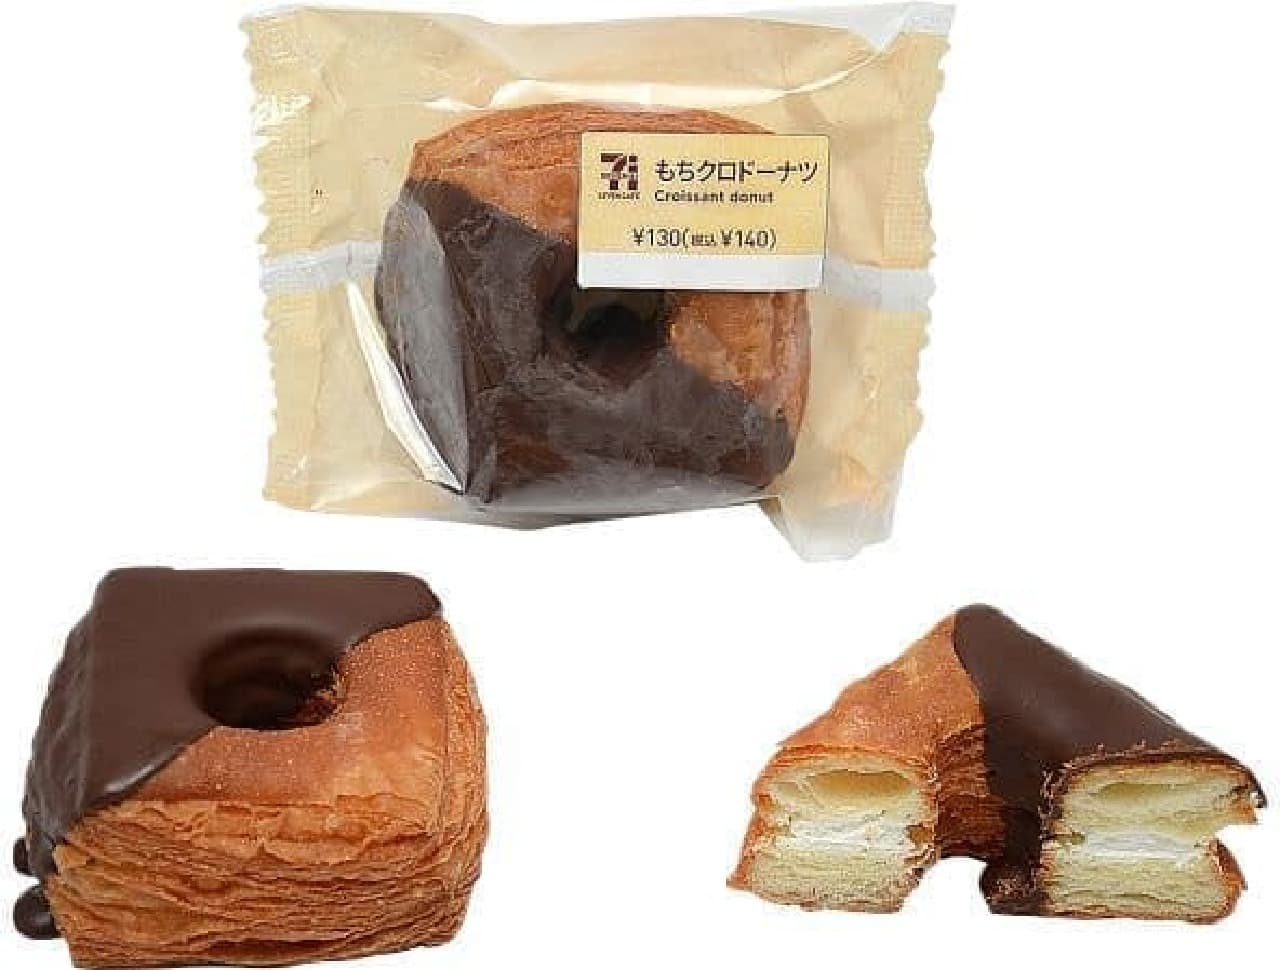 7-ELEVEN "Mochikuro Donuts"